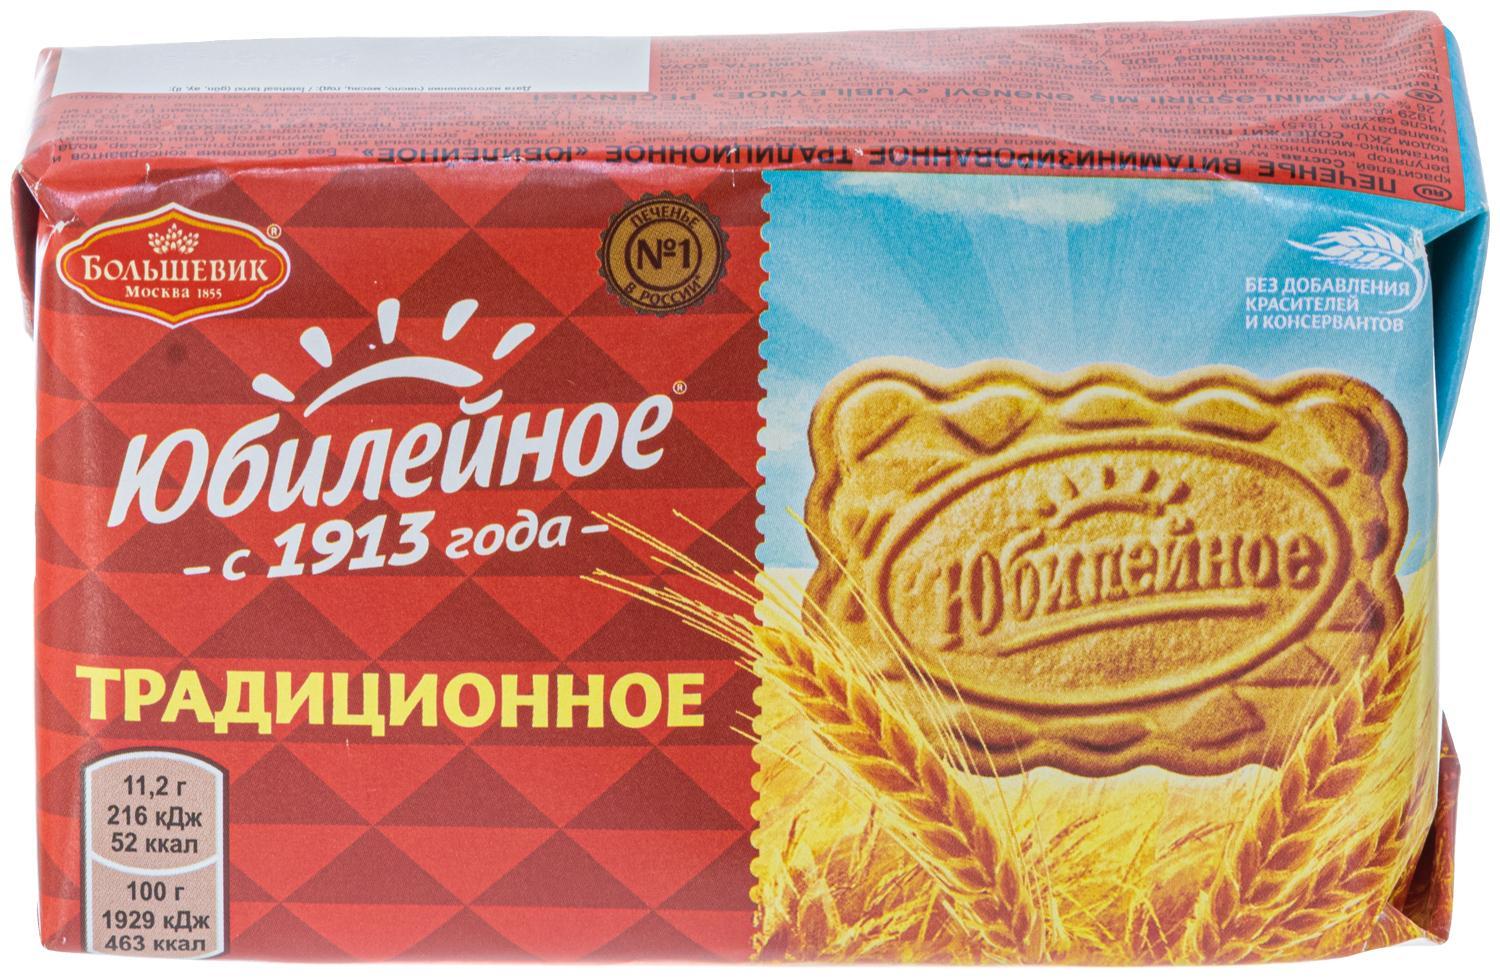 Печенье Юбилейное витаминизированное традиционное 134 гр., картон